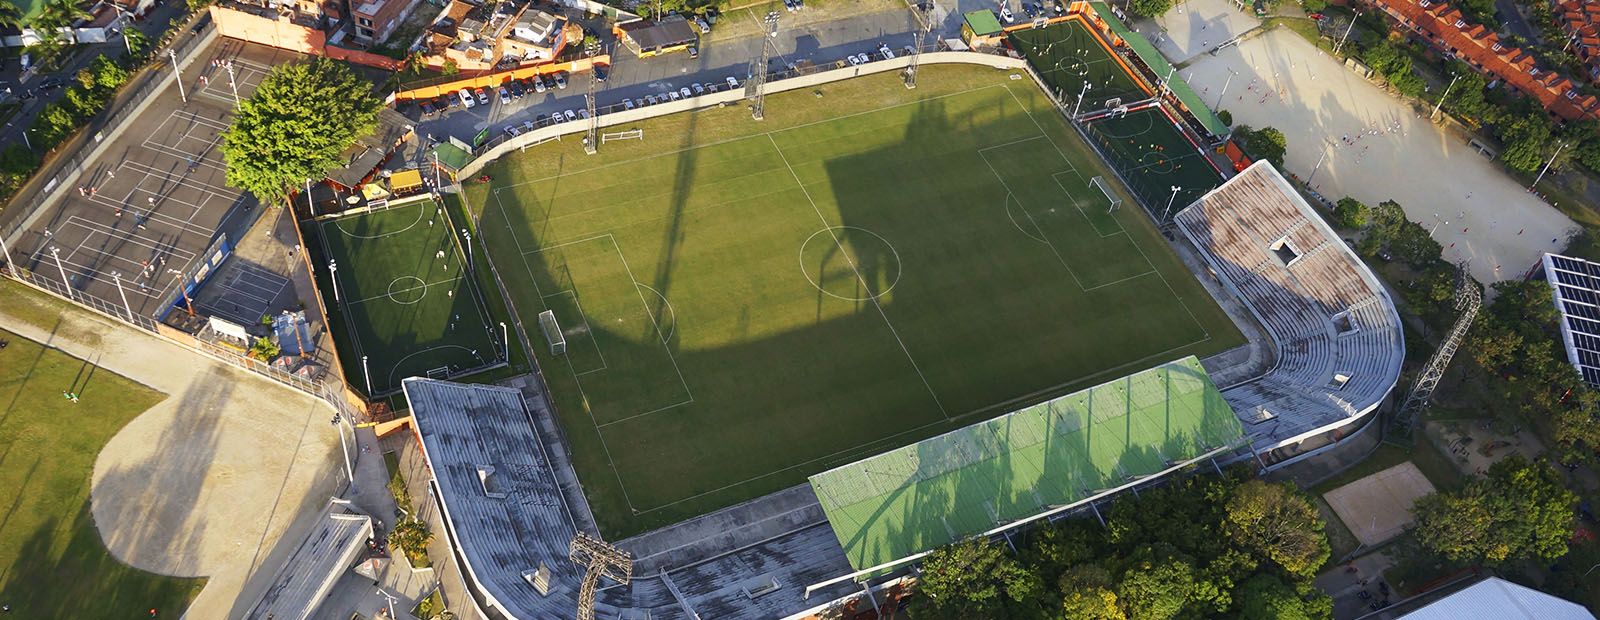 El estadio de Envigado está listo para la reanudación de la liga colombiana